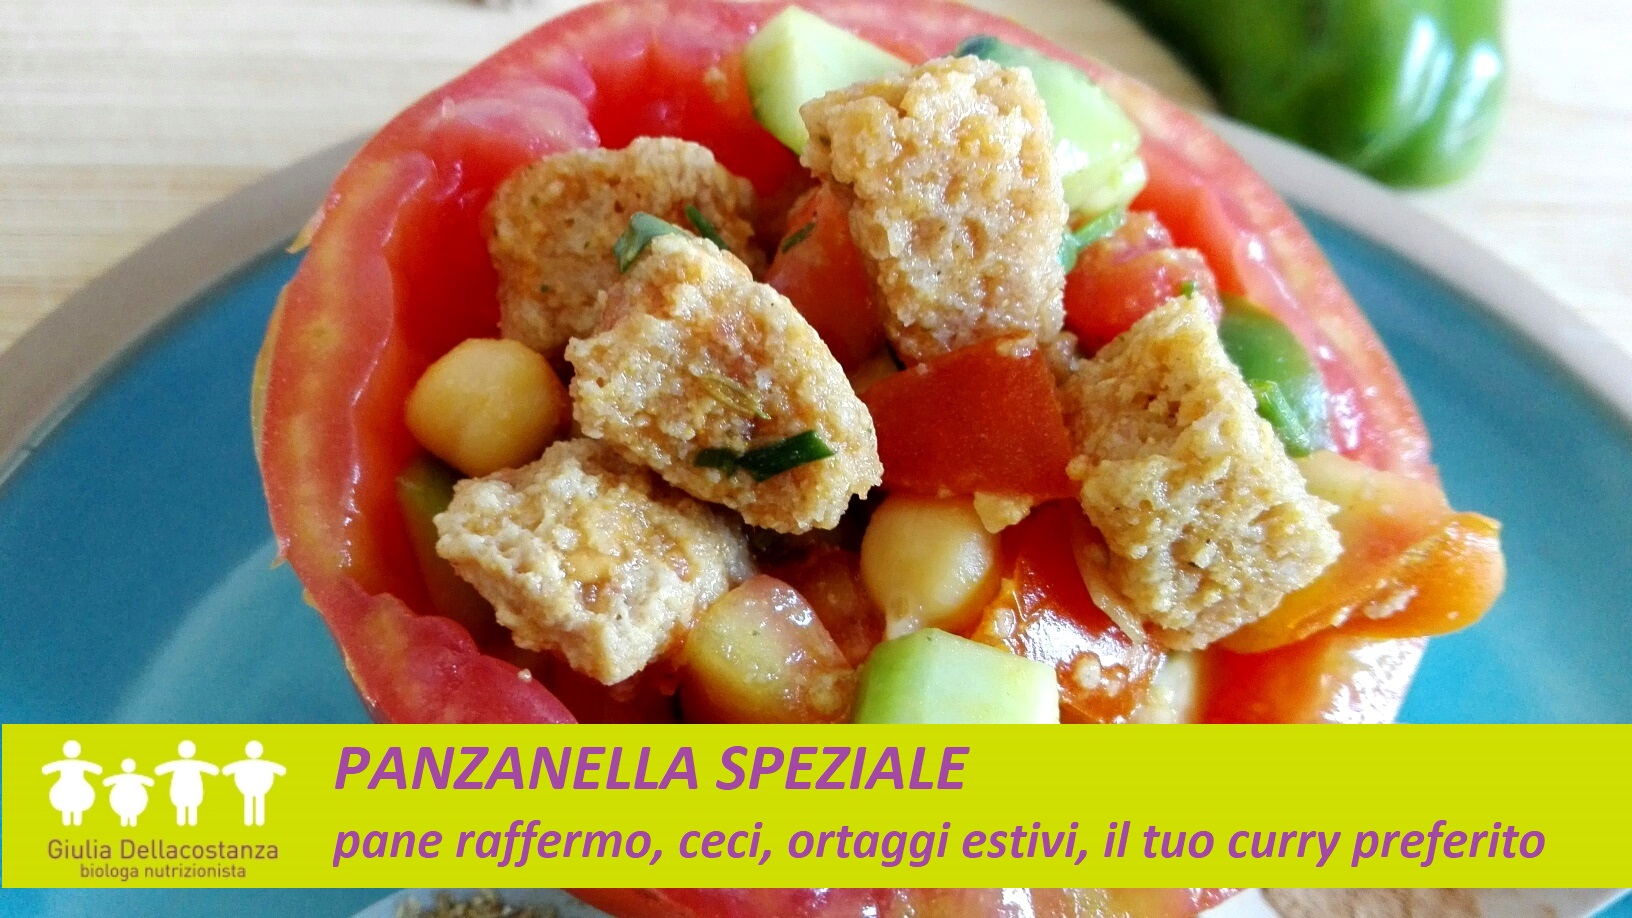 Panzanella speziale - Ricette per l'estate.